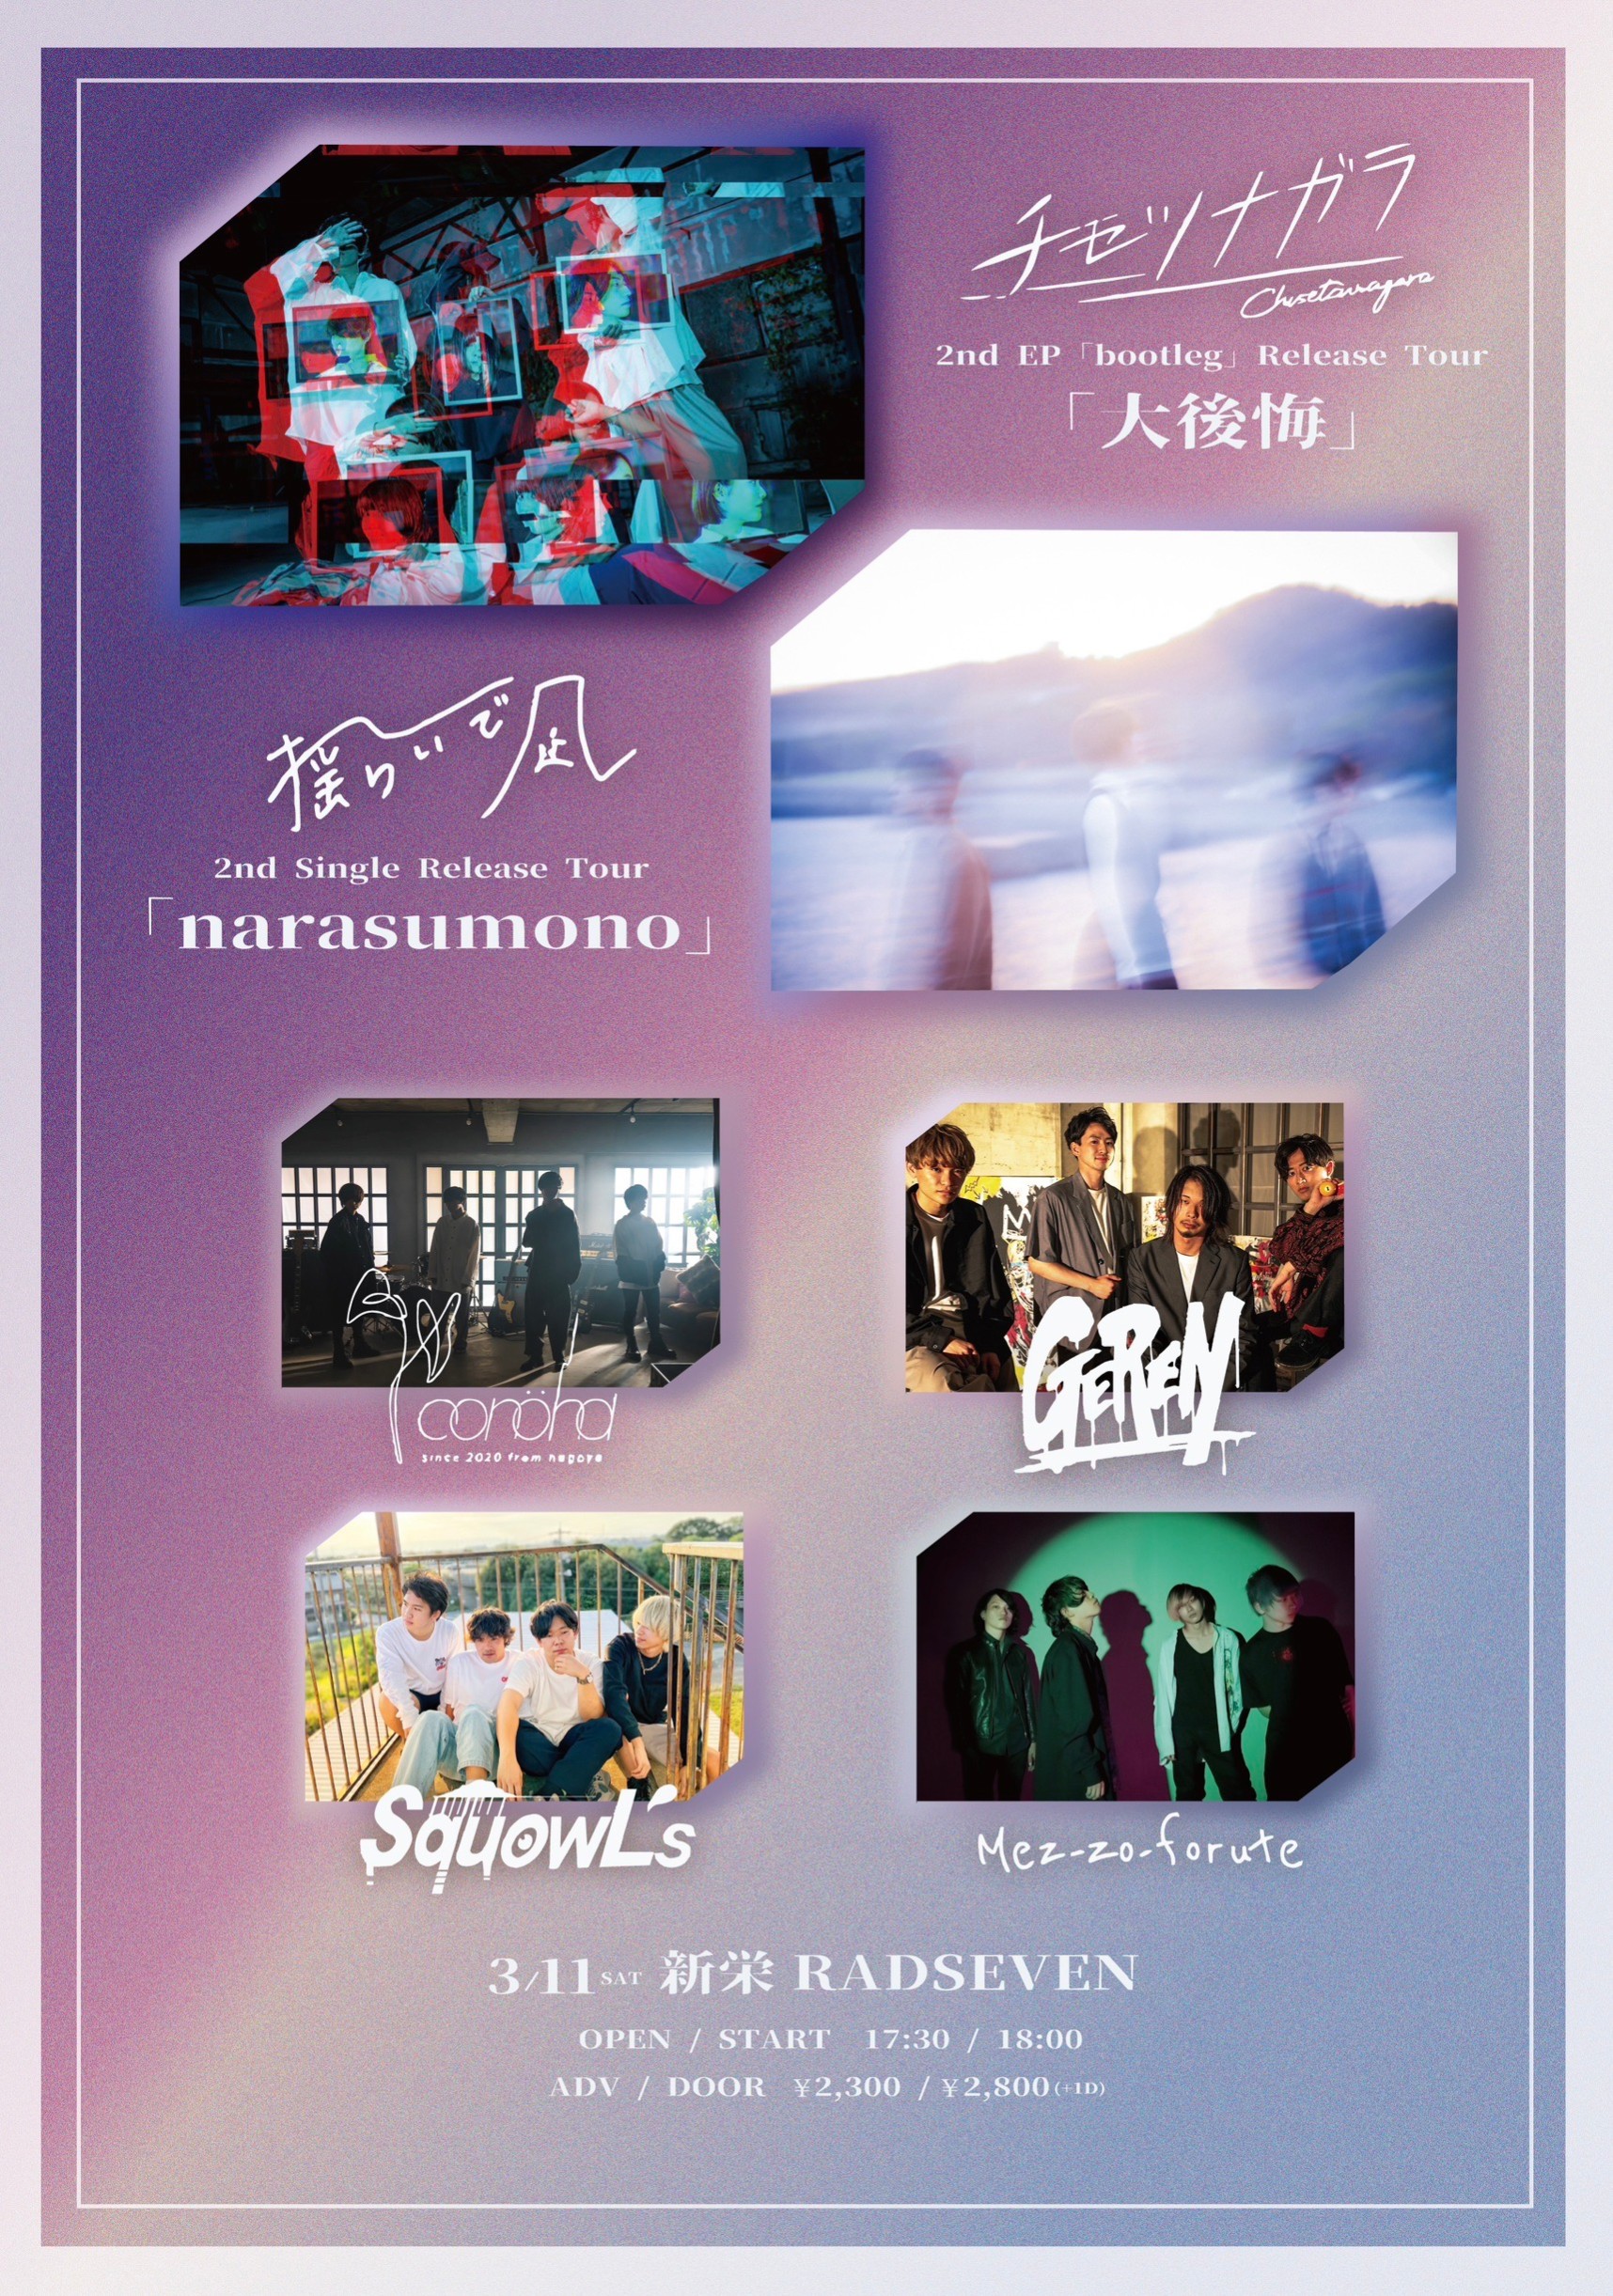 チセツナガラ 2nd EP「bootleg」release tour「大後悔」  揺らいで凪 2nd single 『narasumono』release tour